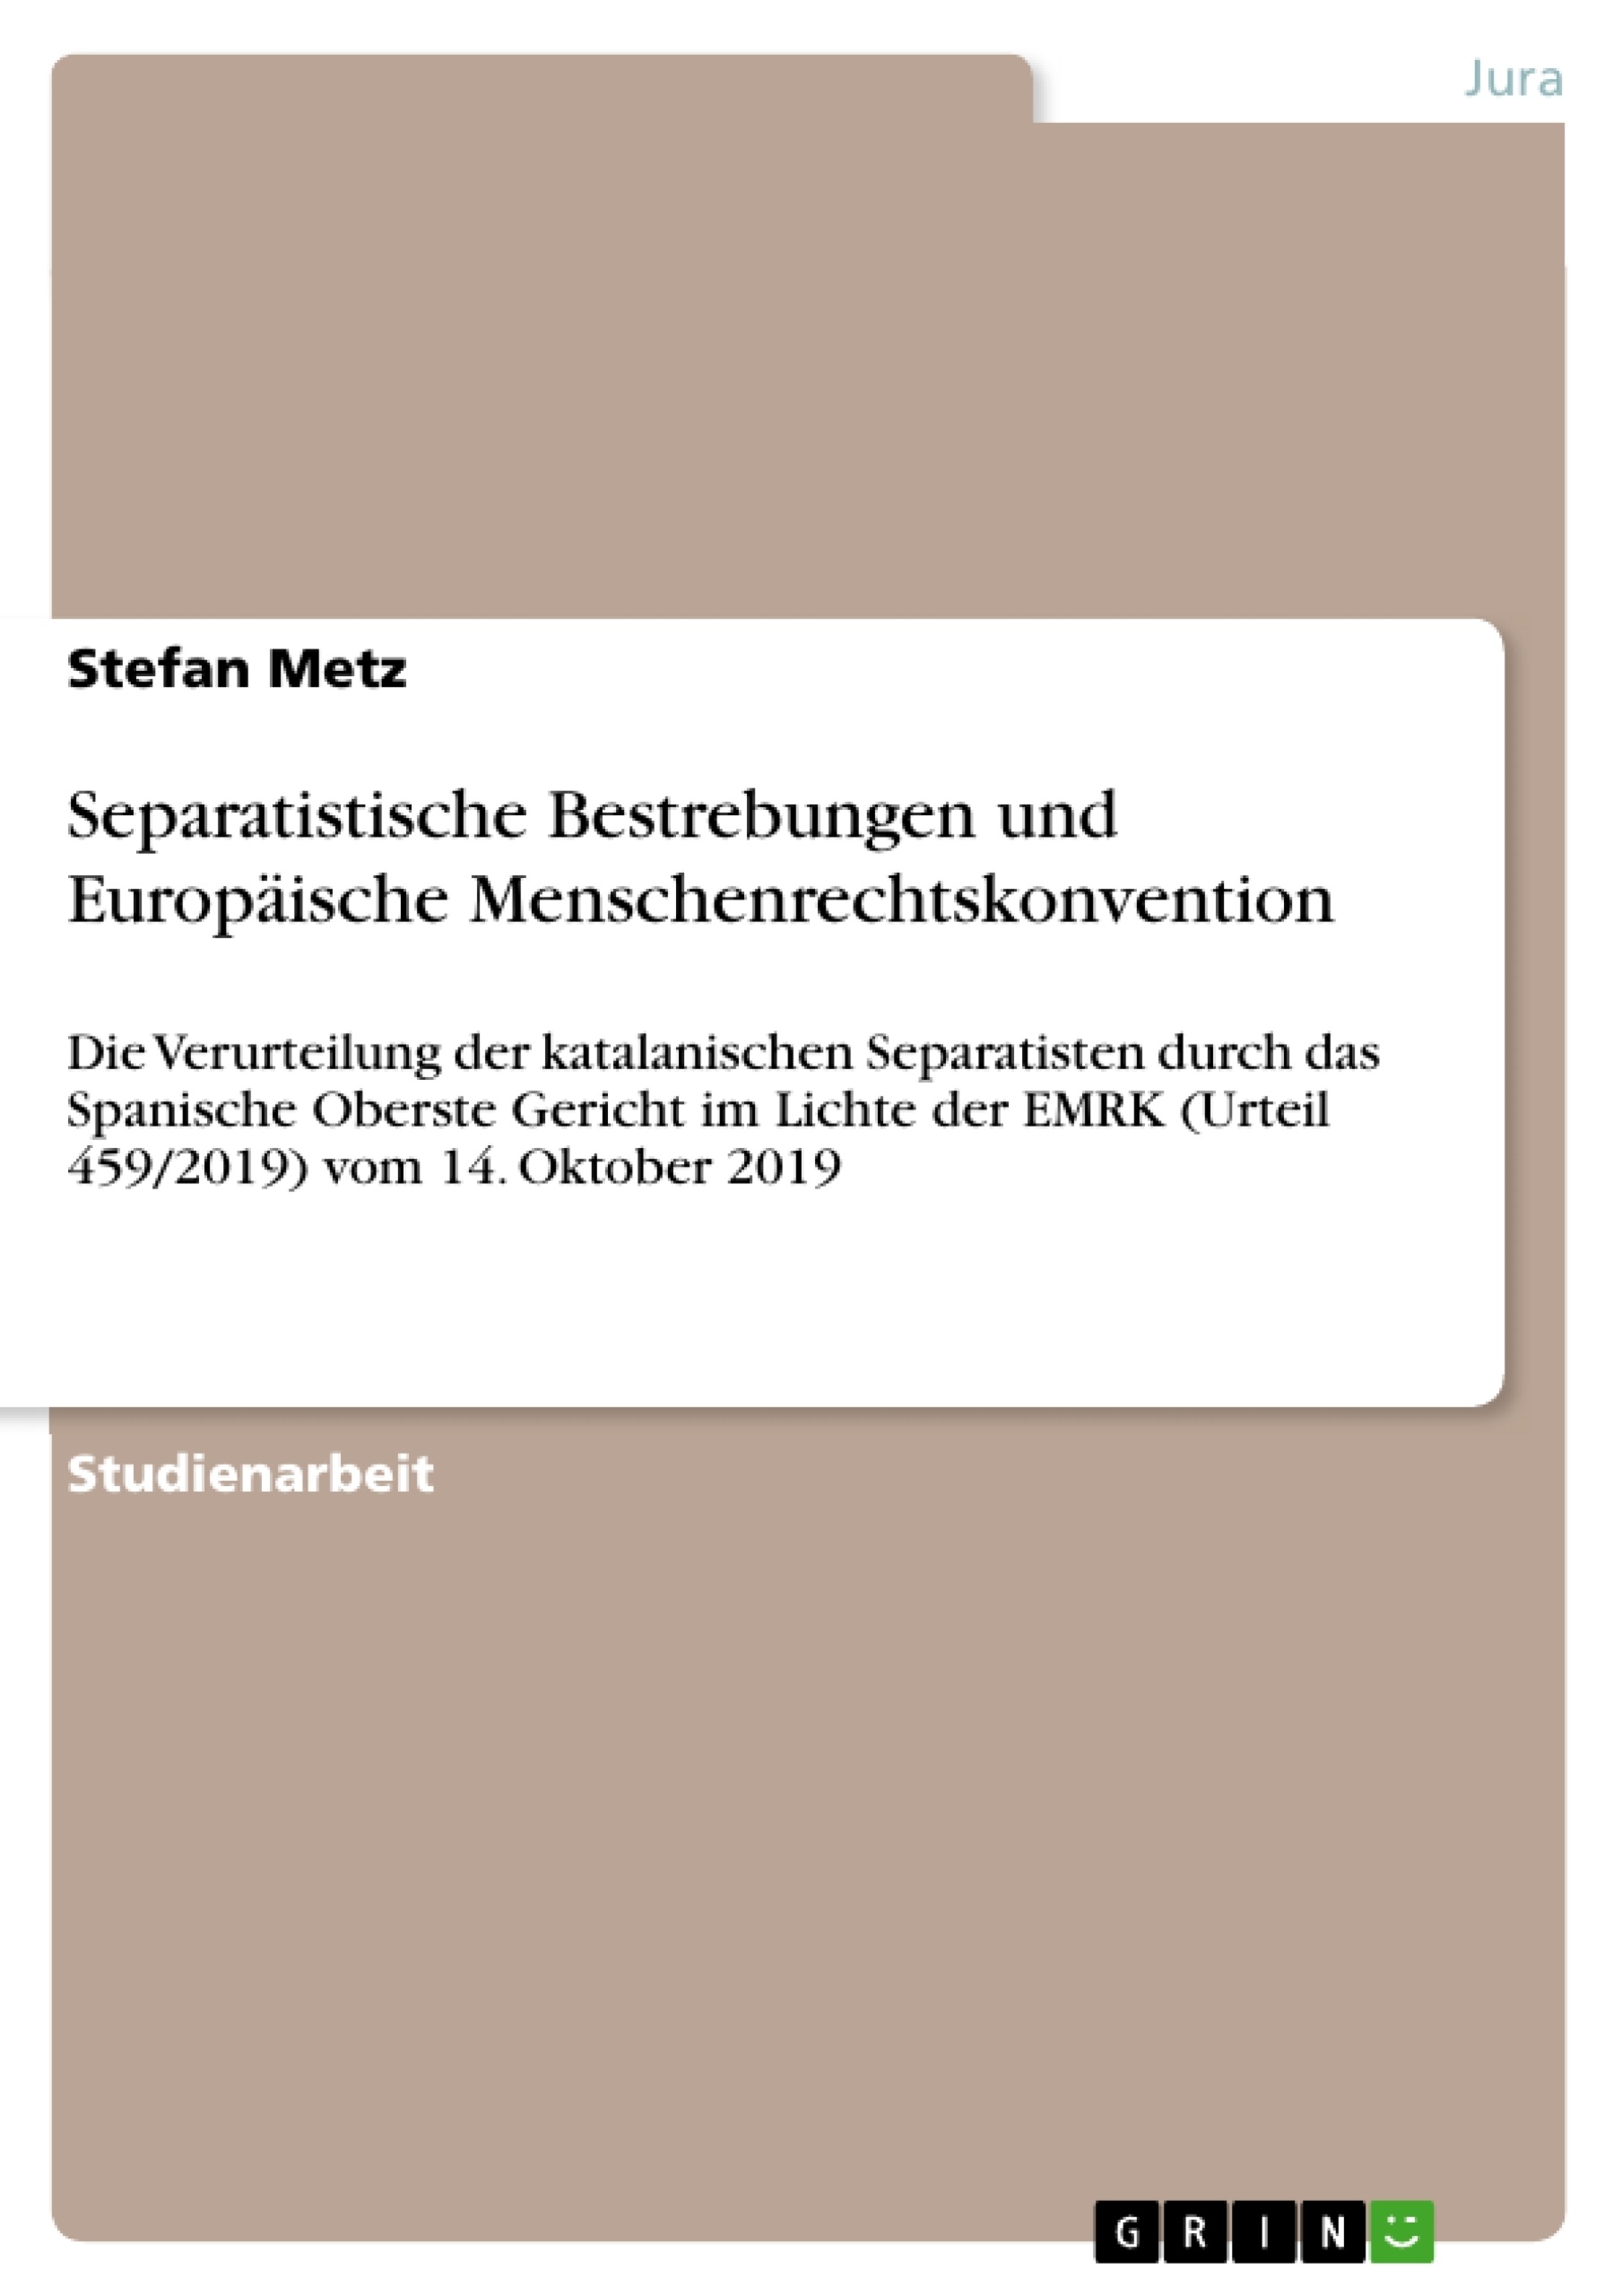 Titel: Separatistische Bestrebungen und Europäische Menschenrechtskonvention